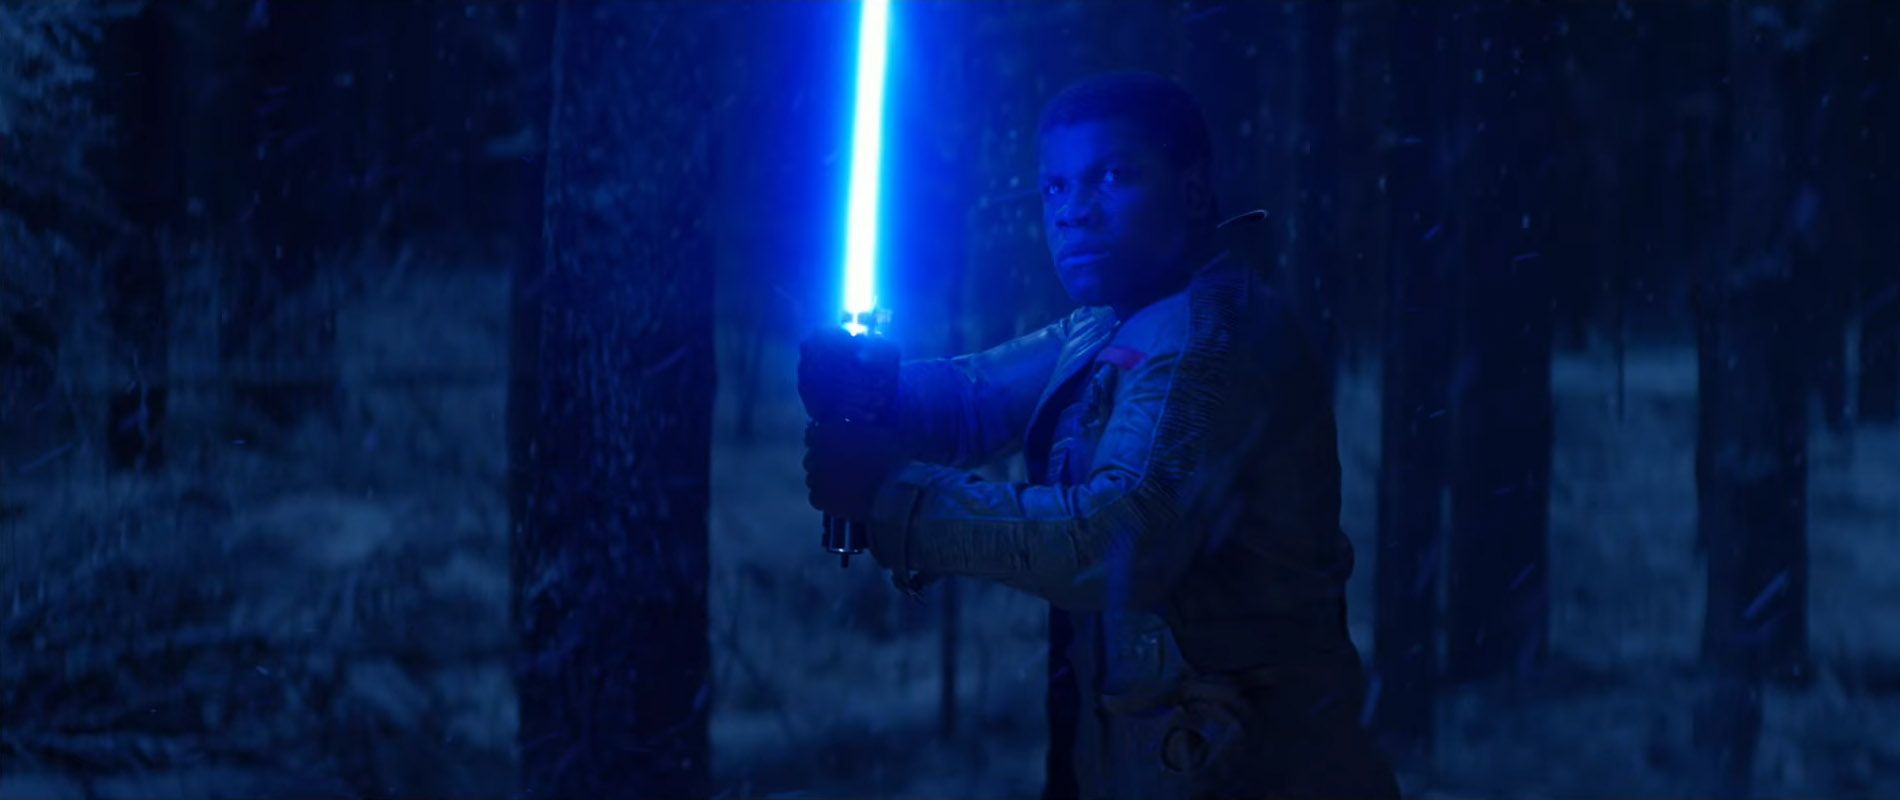 Star Wars 7 Trailer #3 - Finn Lightsaber